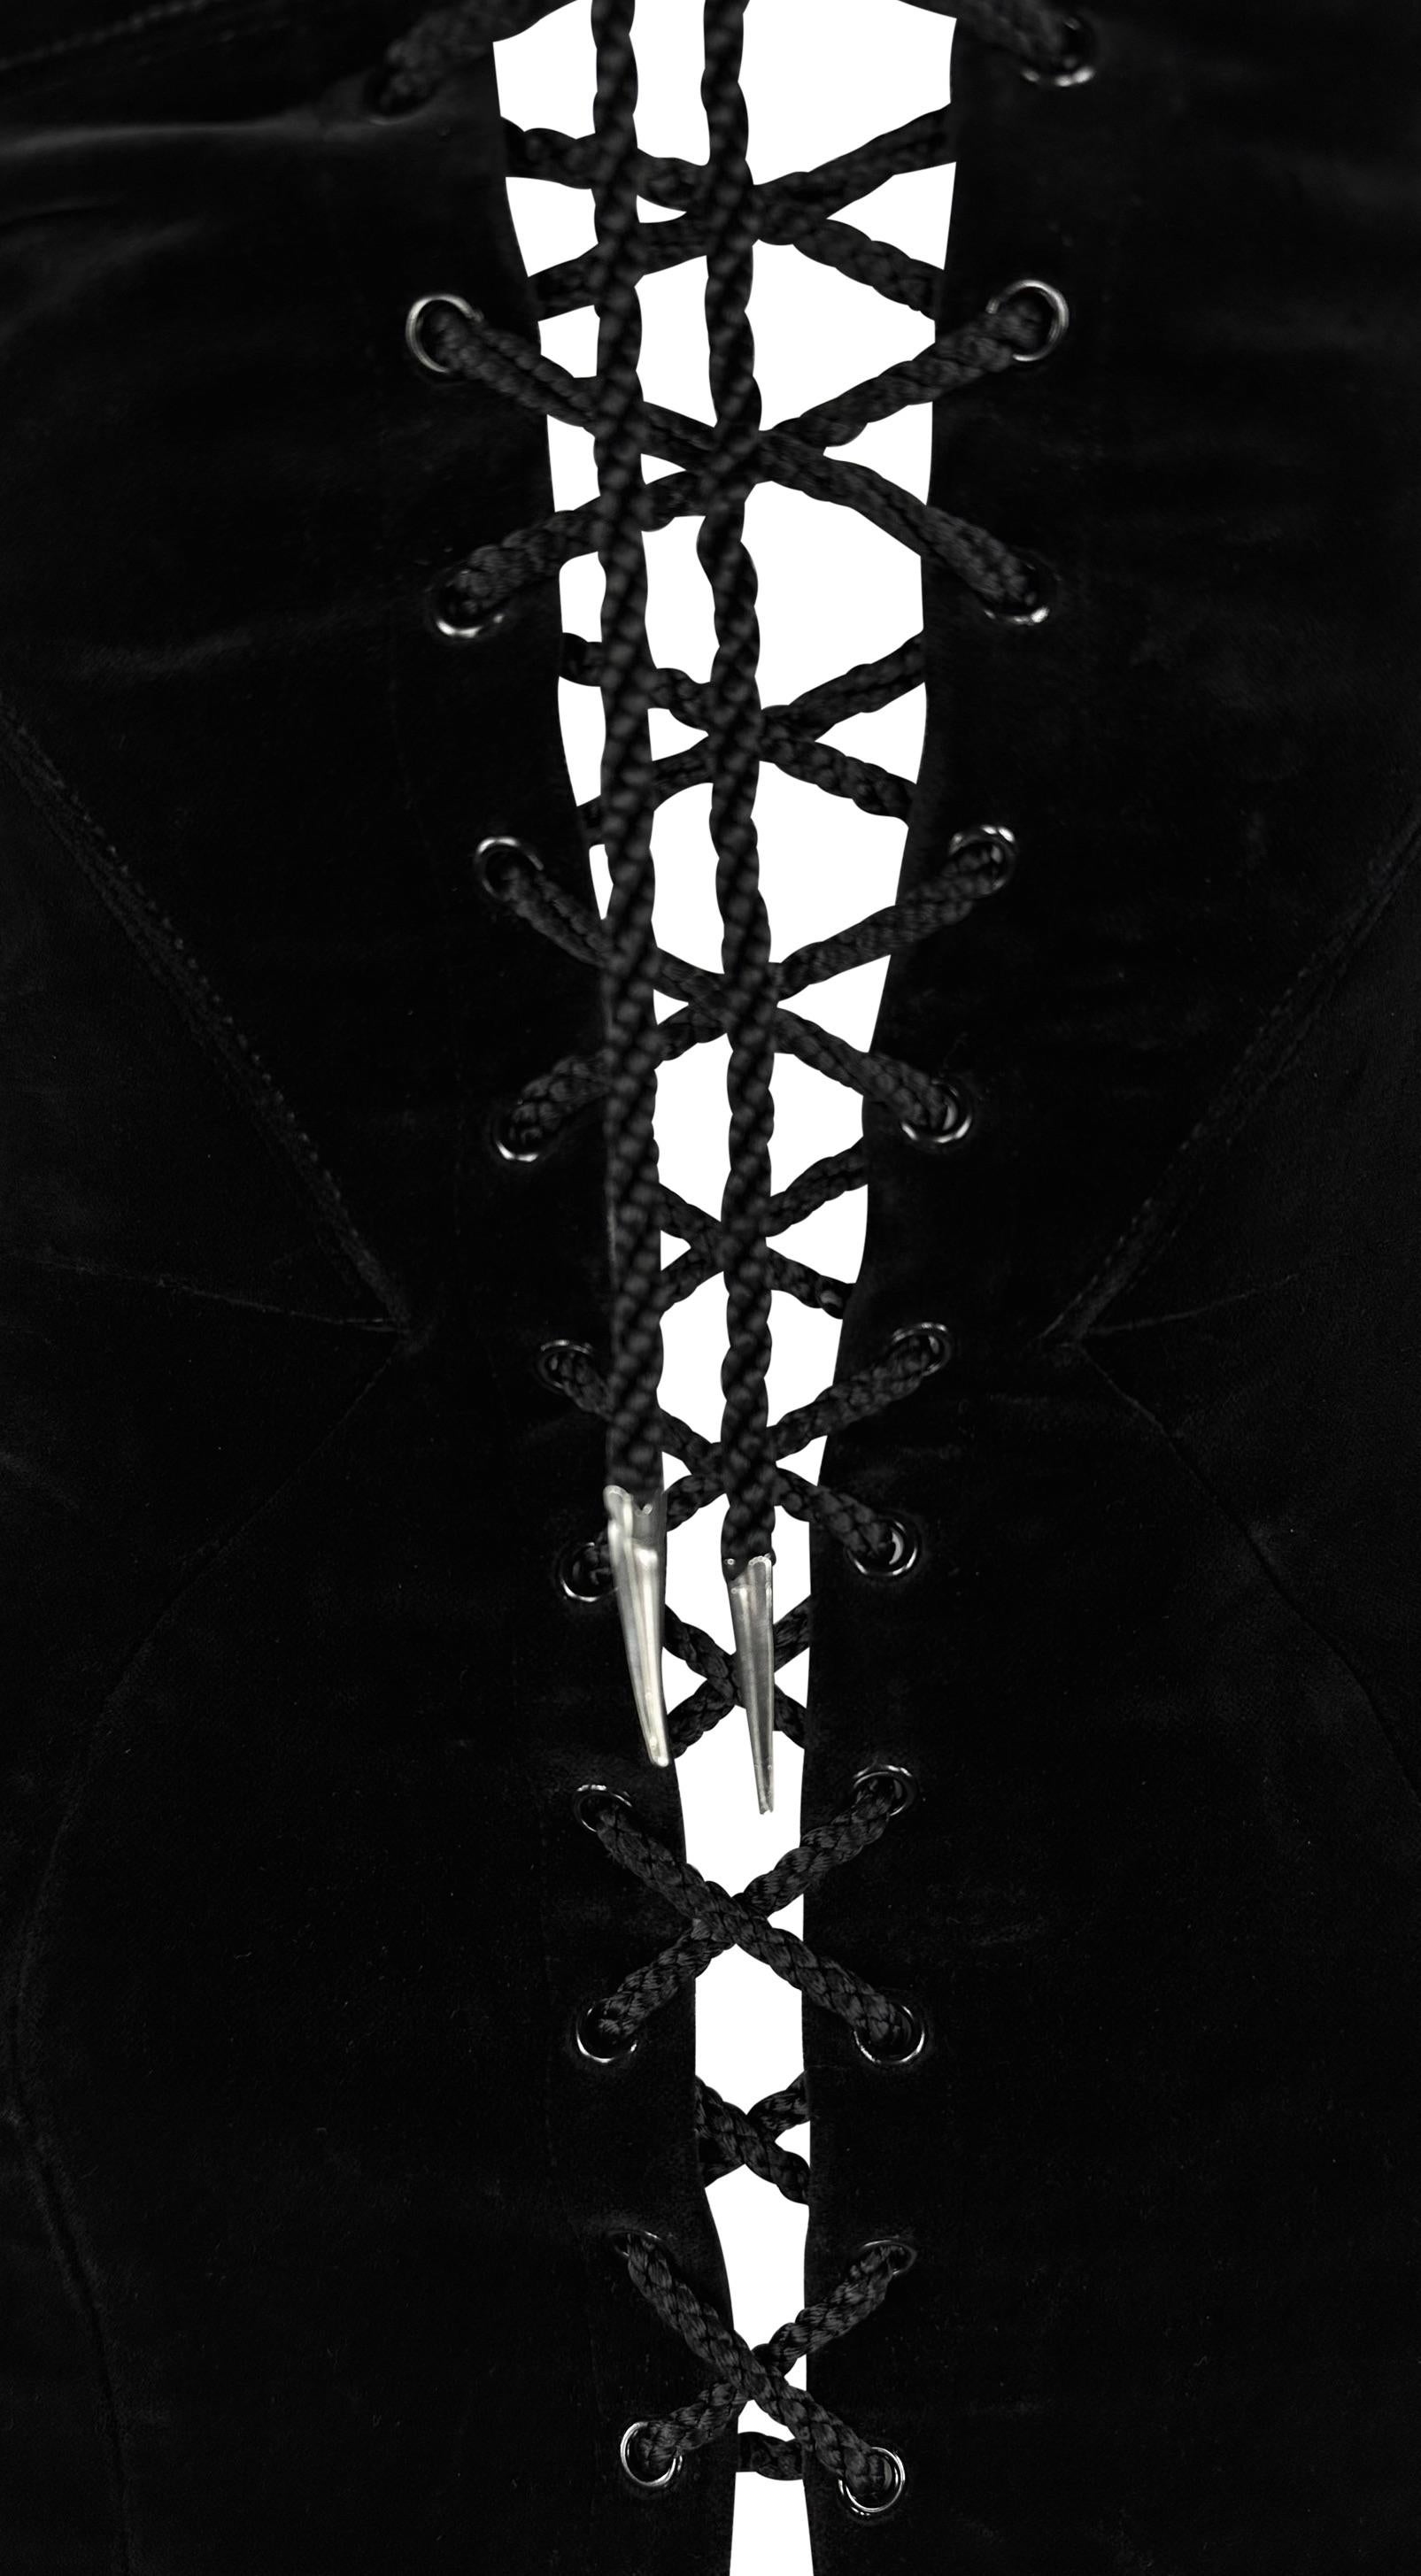 Dieses Korsett aus schwarzem Samt von Thierry Mugler aus den späten 1980er Jahren zum Schnüren ist eine Bereicherung für jeden Kleiderschrank und jede Sammlung. Dieses von Manfred Thierry Mugler entworfene, formschöne Korsett zeichnet sich durch